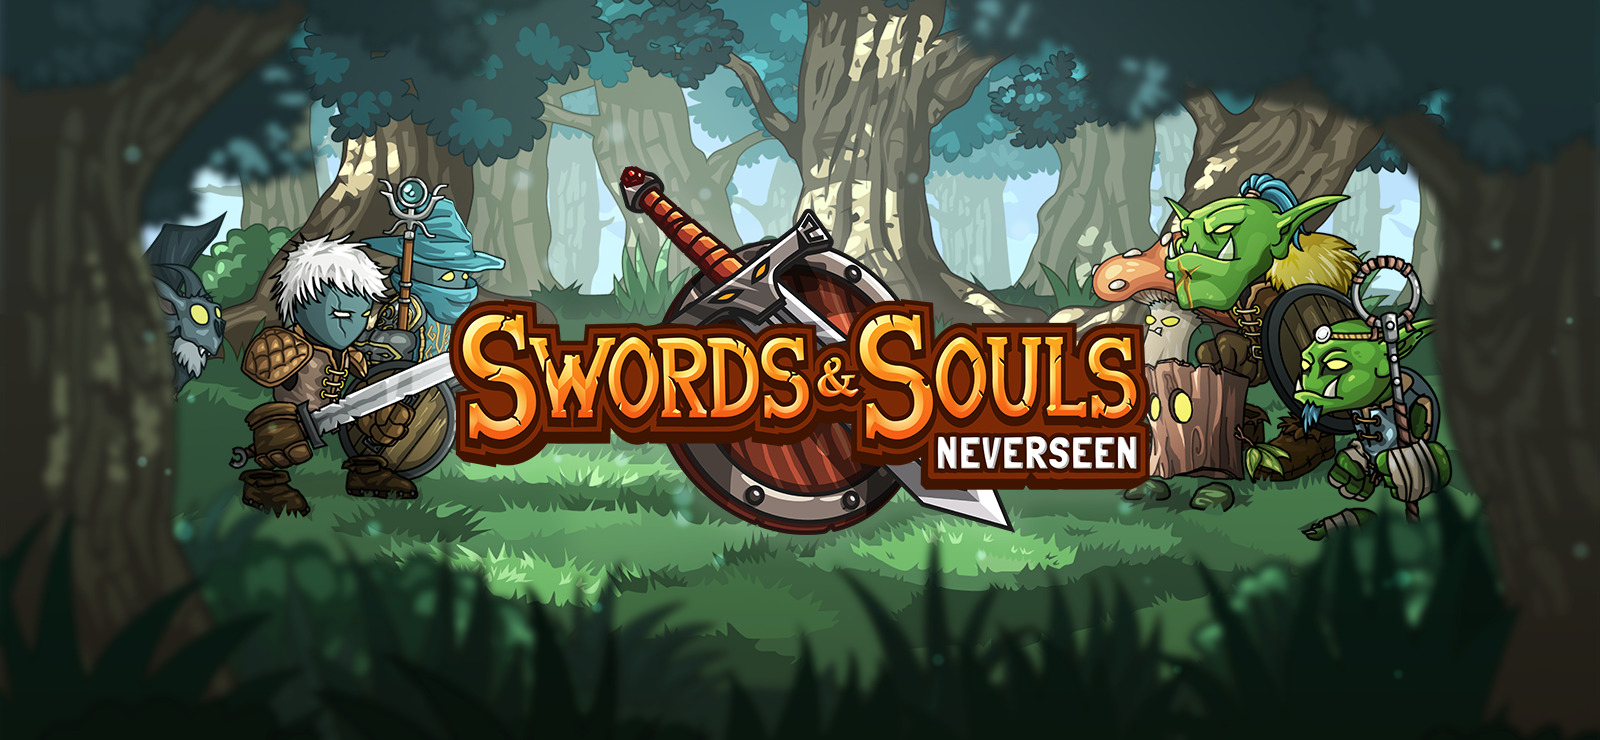 swords and souls neverseen apk